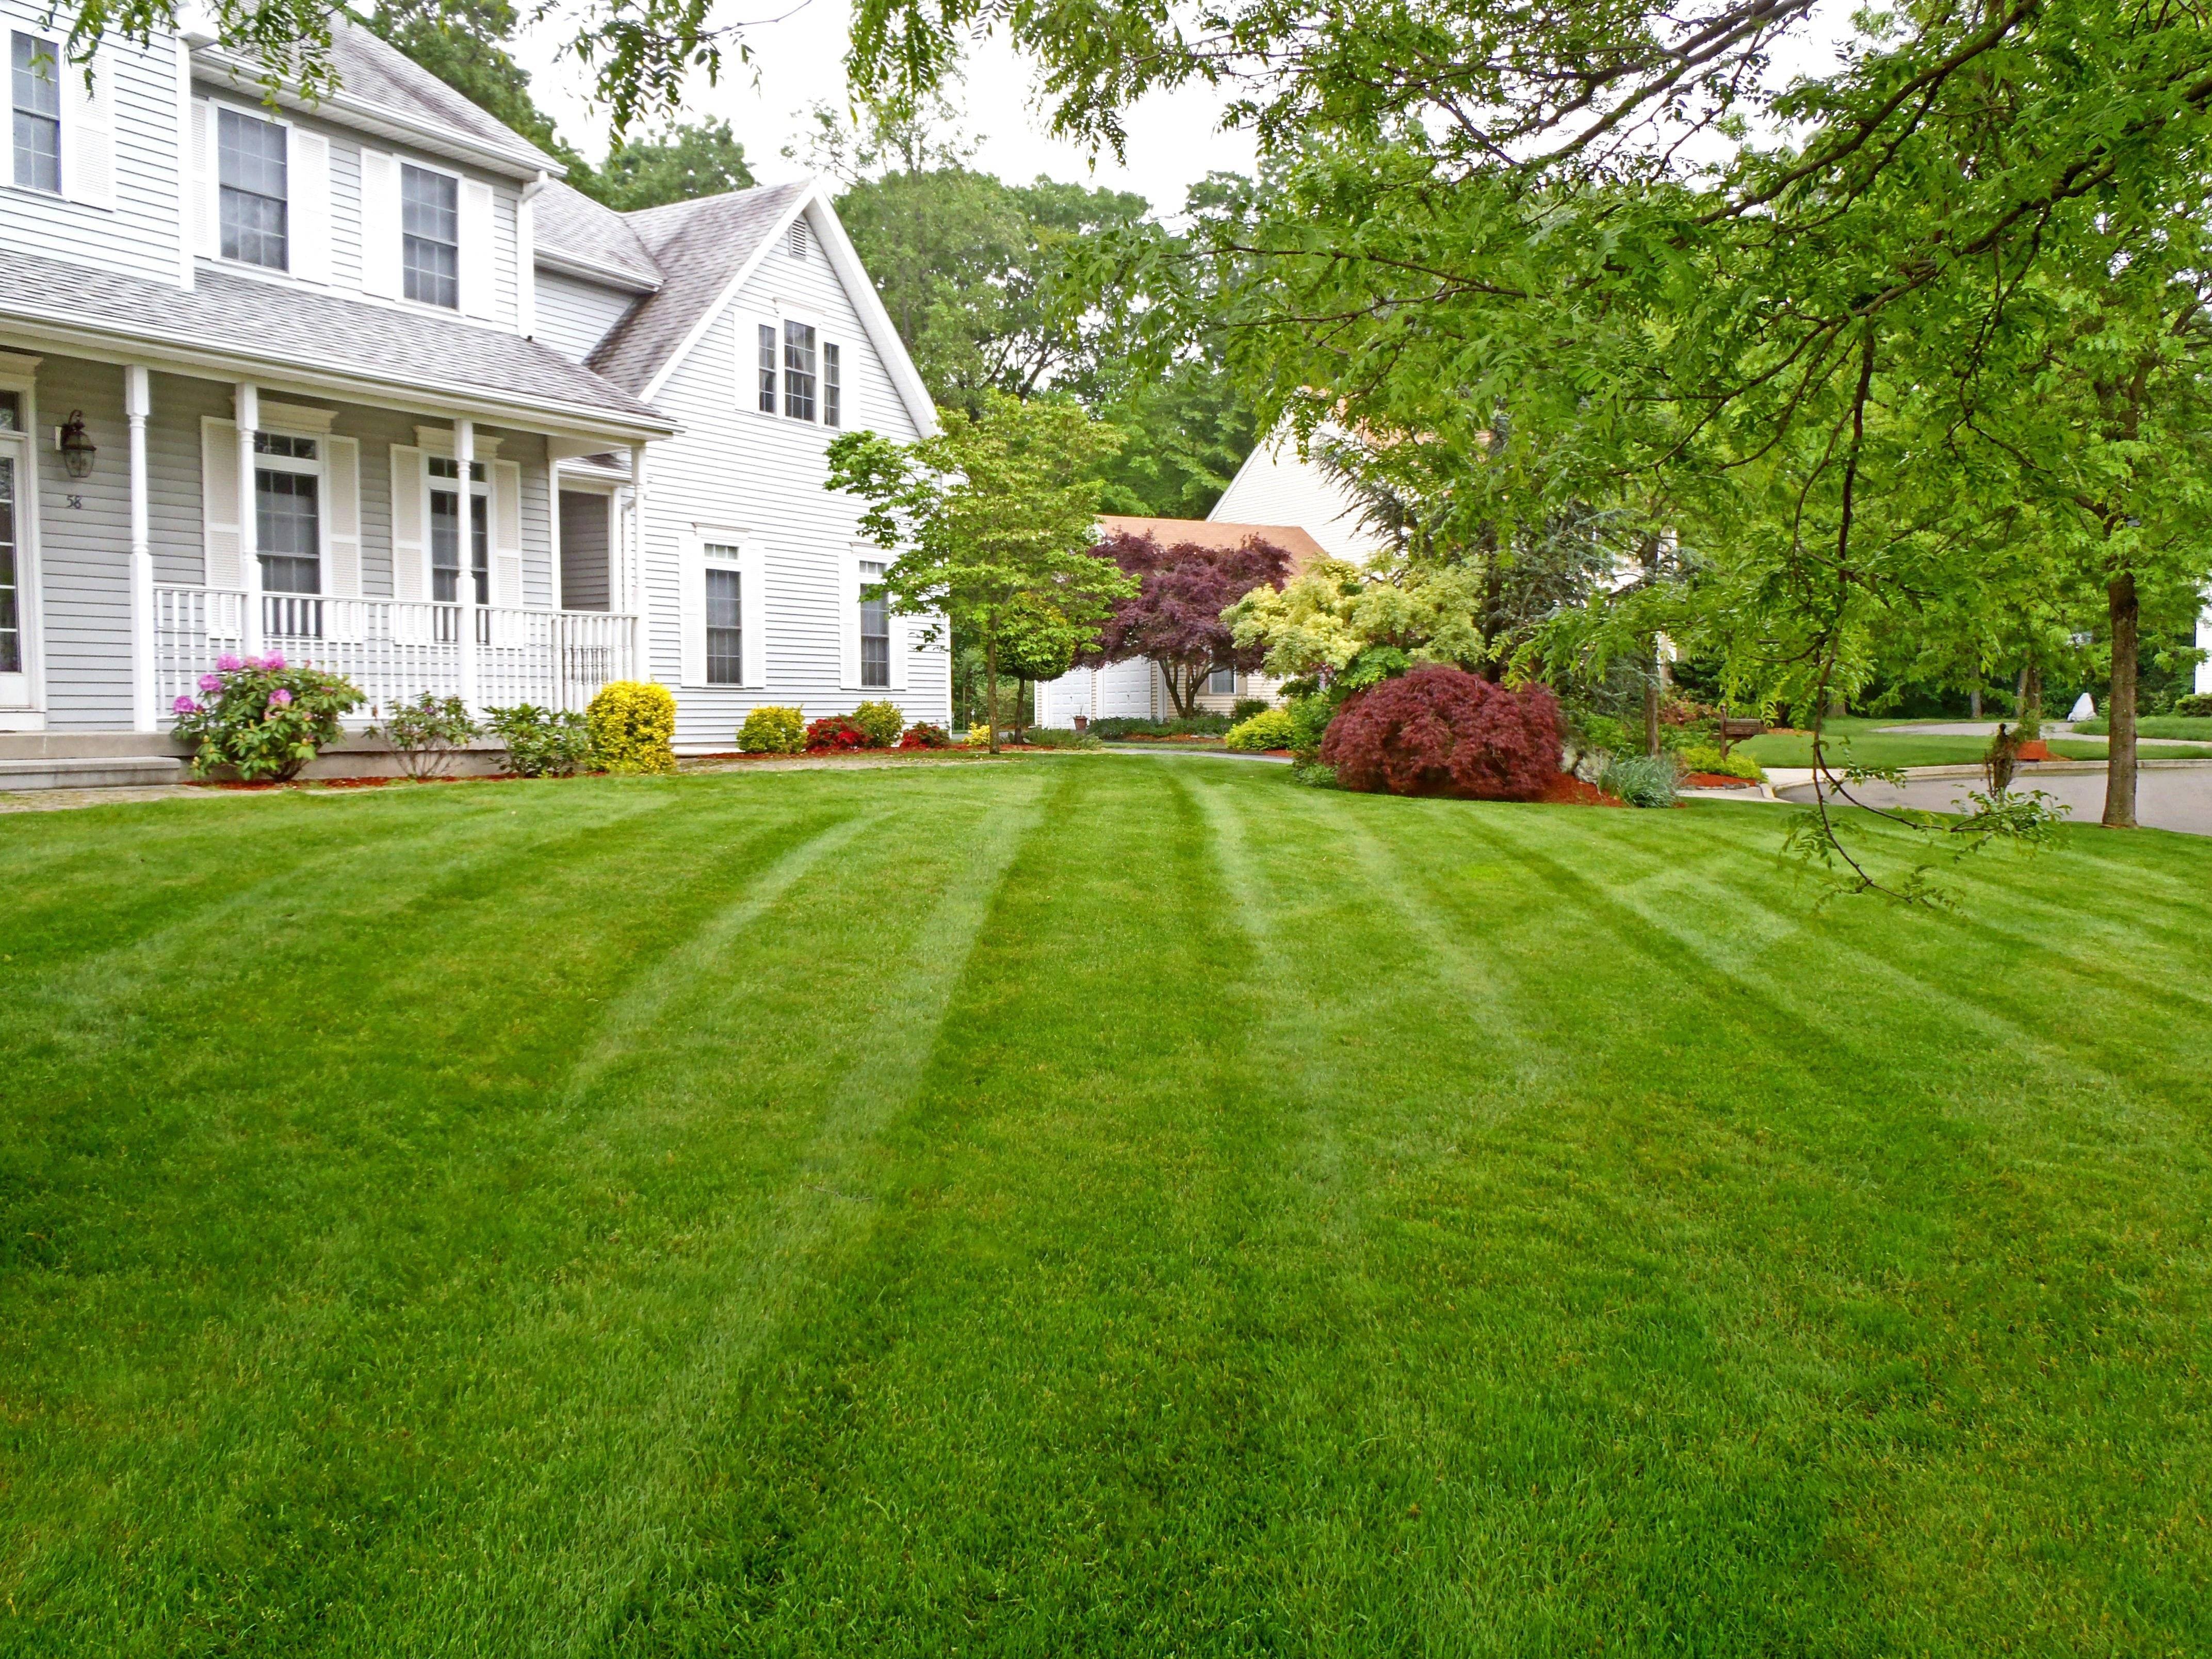 Трава трава у дома зеленая. США дом дерн. Газон Американ Грин. Красивый газон. Красивый загородный дом с газоном.